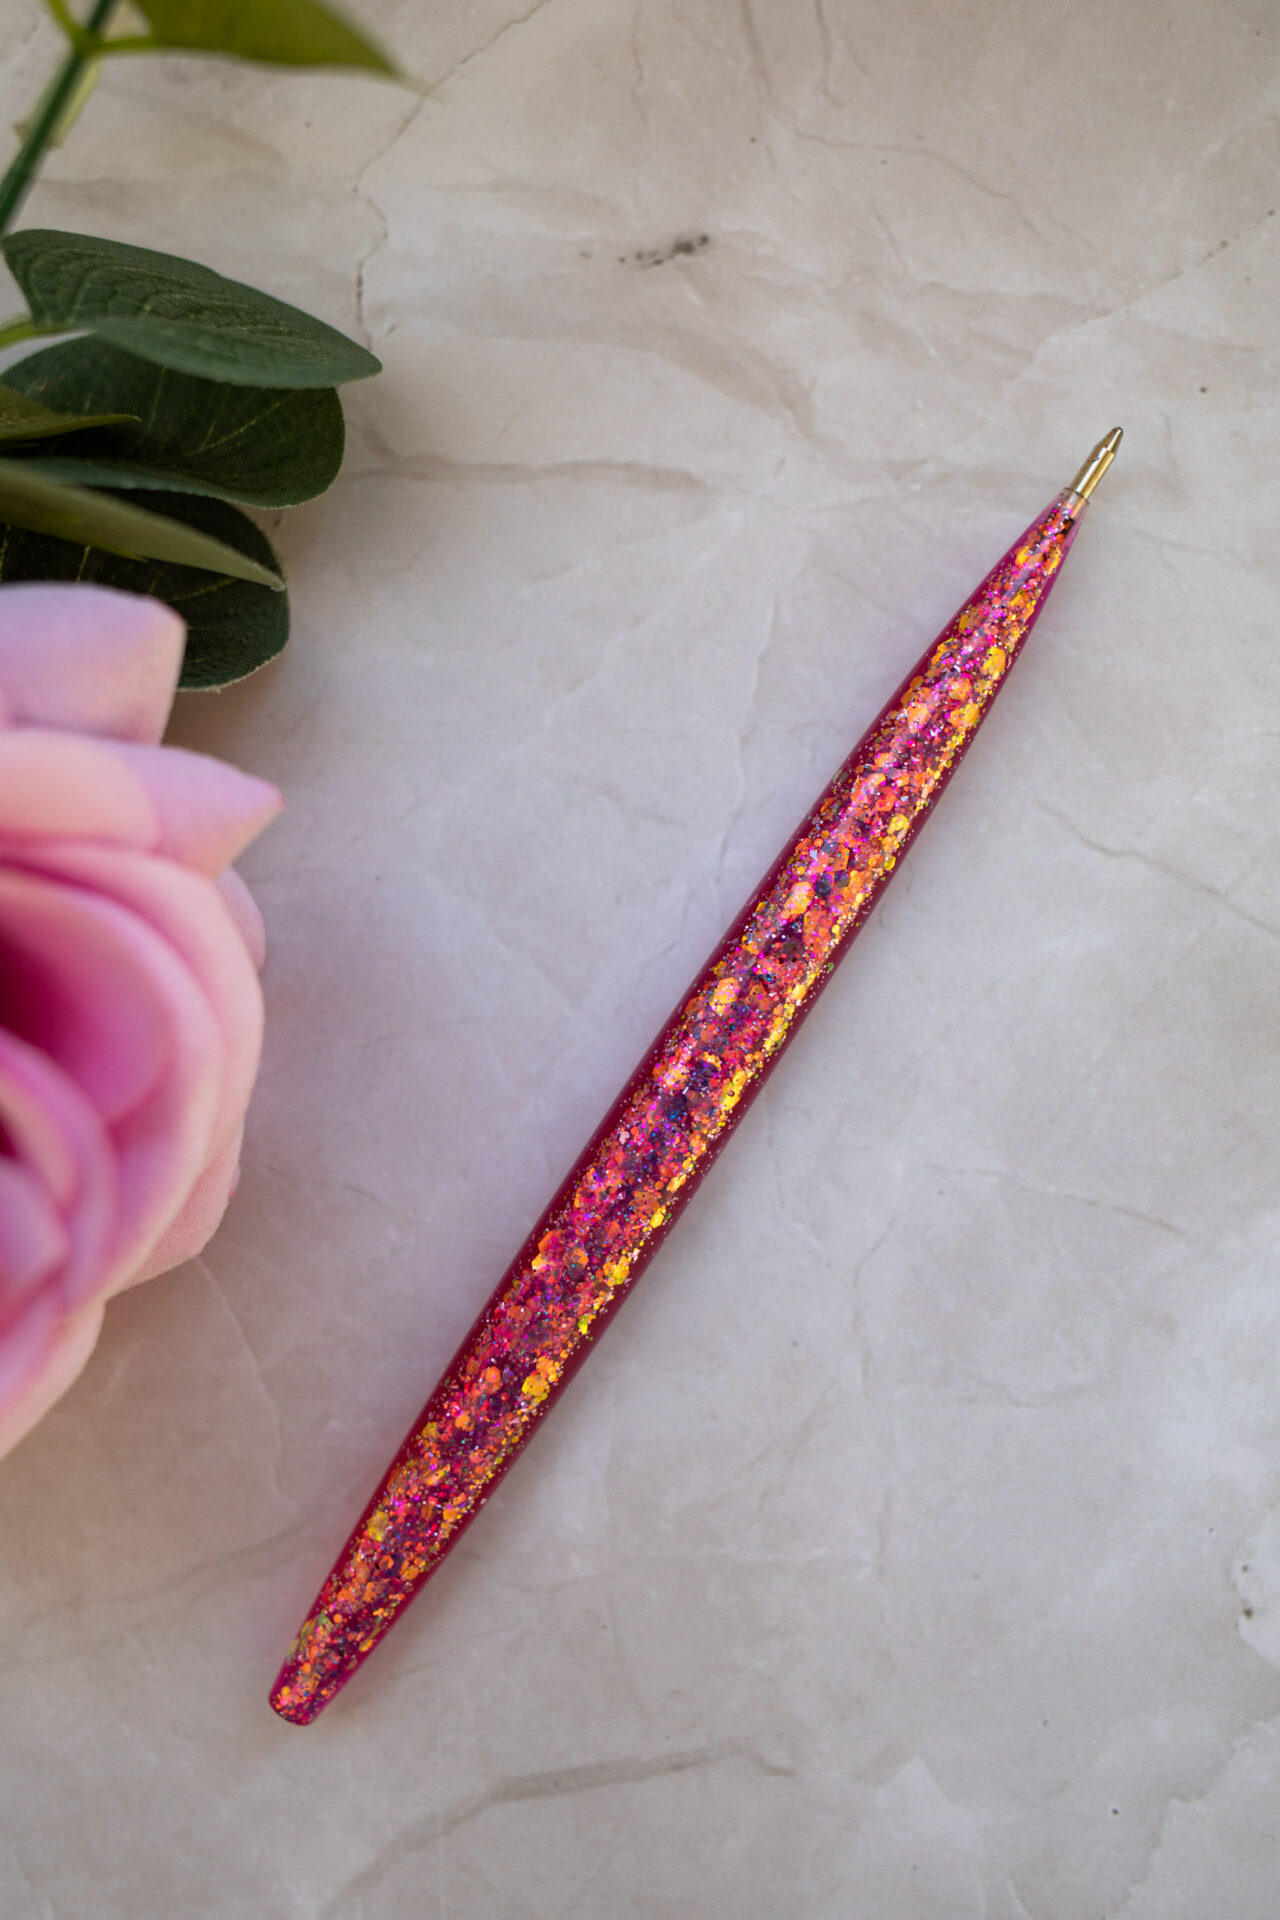 Stylo résine rose paillette - Boutique en ligne d'idées cadeau et de décoration résine jesmonite badges et stickers